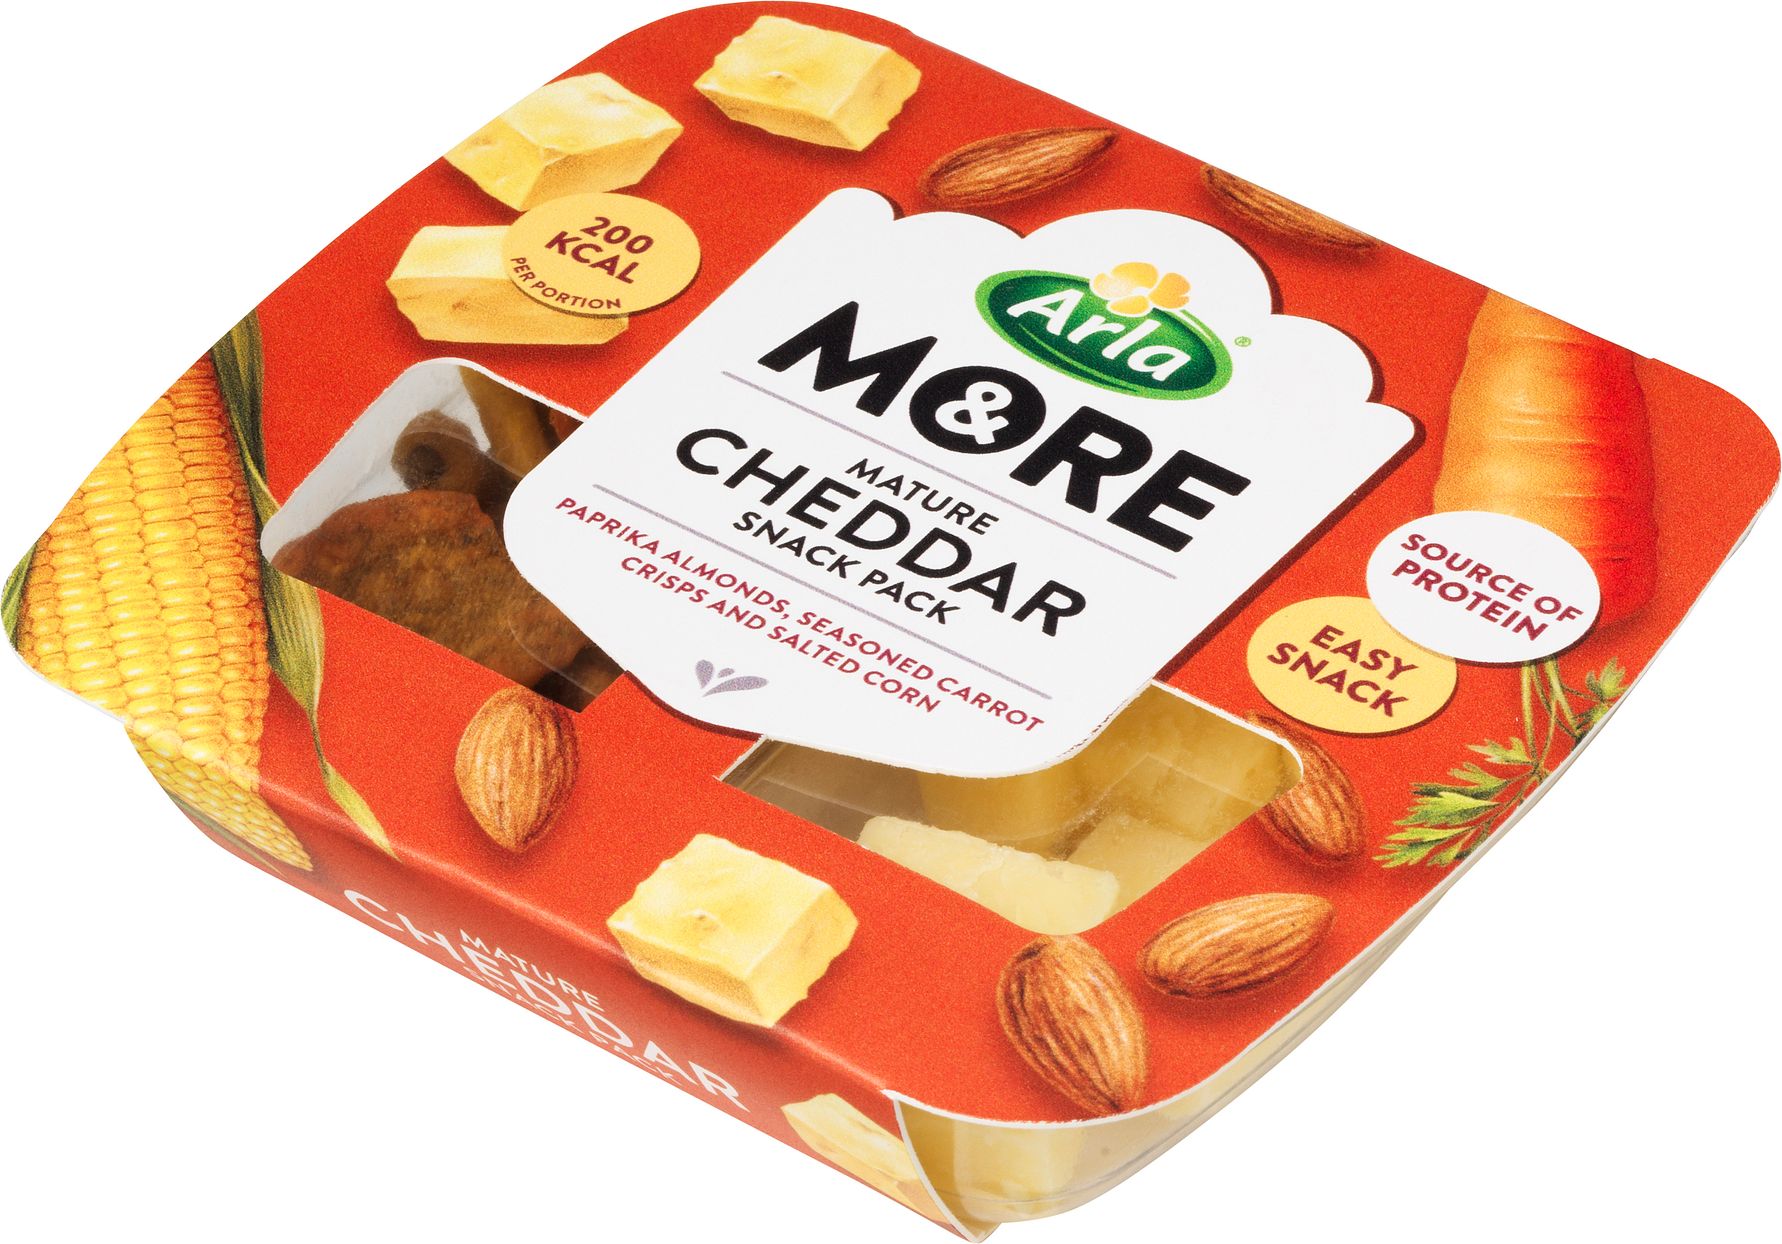 Pift dagen op med spændende mellemmåltider: Arla&More lancerer to nye ostesnacks